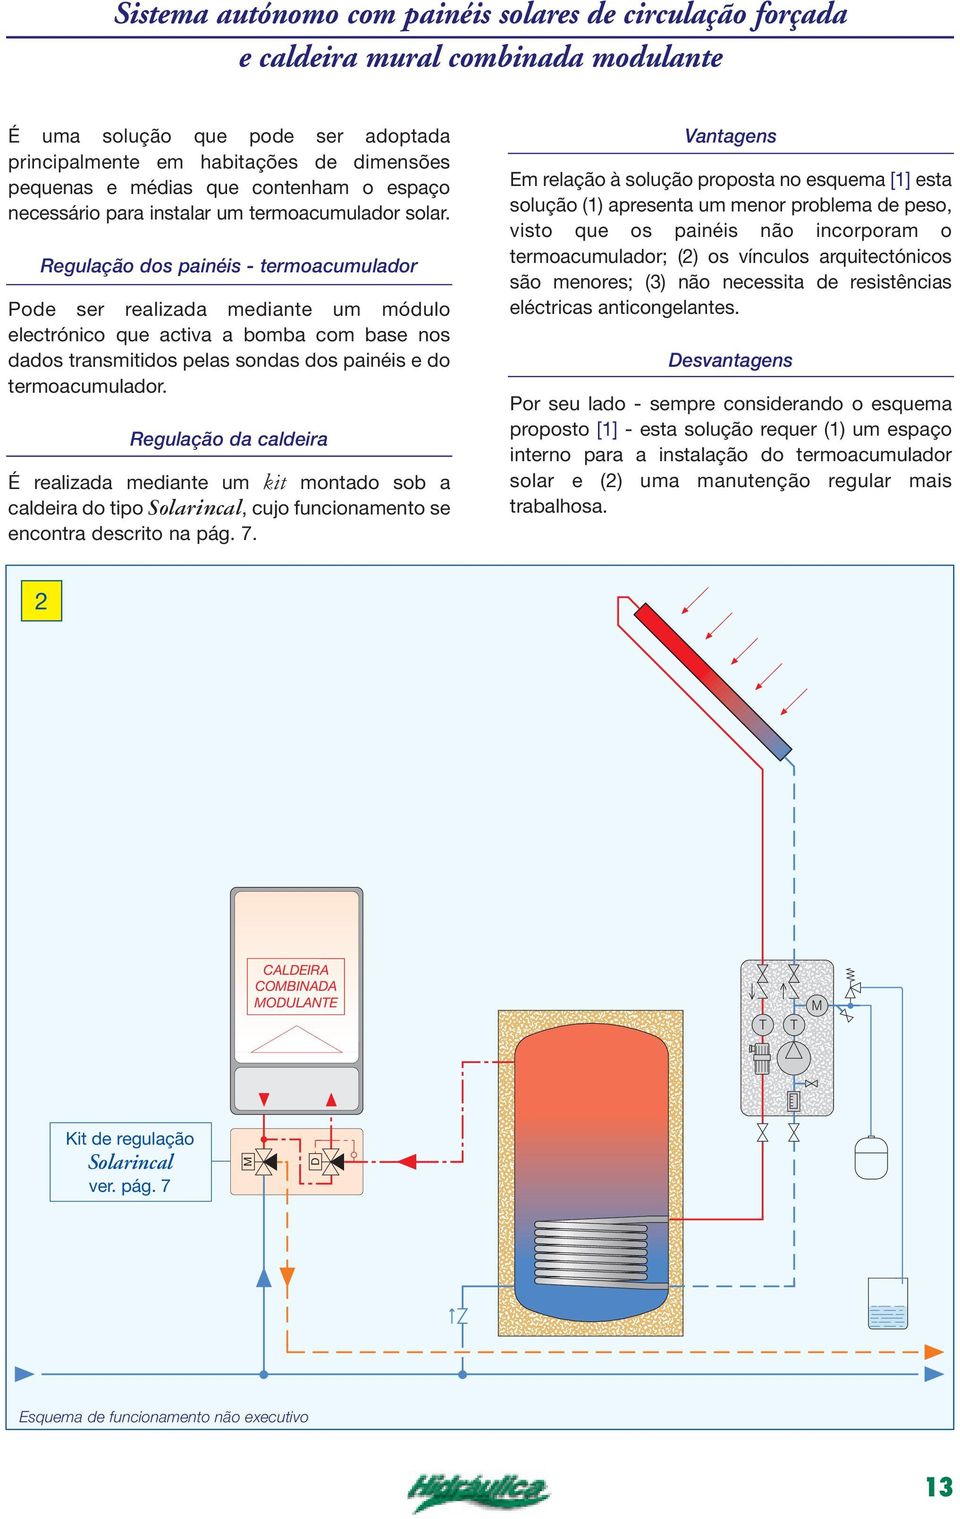 Regulação dos painéis - termoacumulador Pode ser realizada mediante um módulo electrónico que activa a bomba com base nos dados transmitidos pelas sondas dos painéis e do termoacumulador.